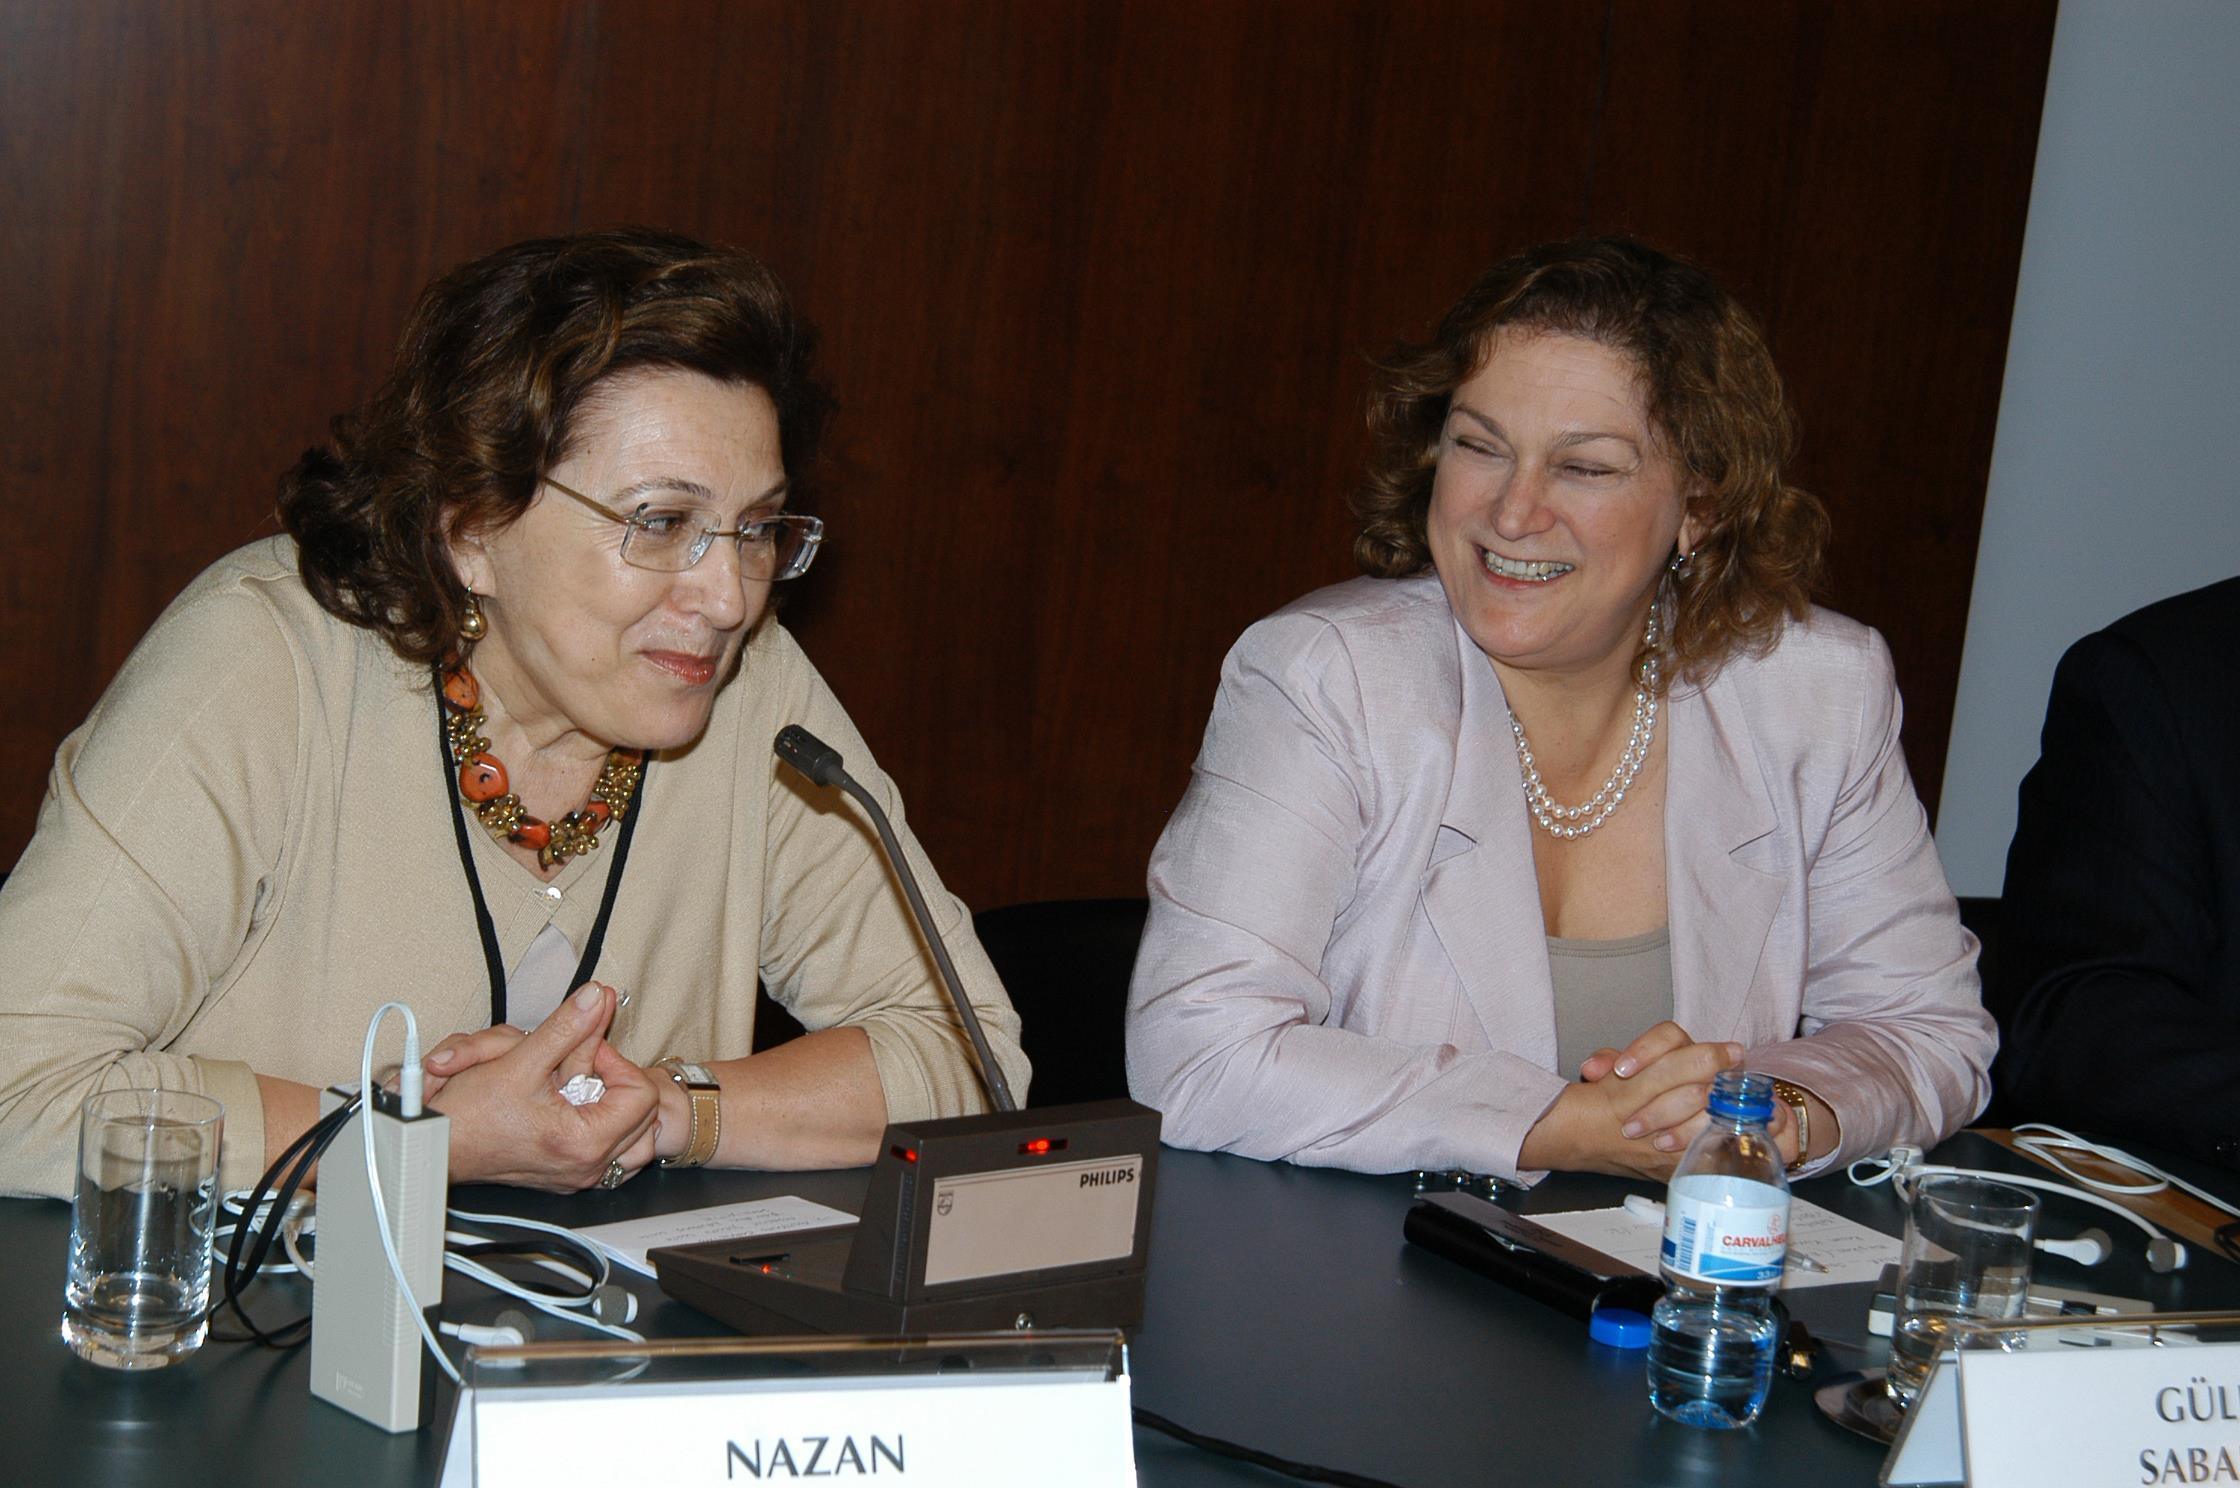 Conferência de imprensa. Nazan Ölçer (à esq.) e Güler Sabanci (à dir.)